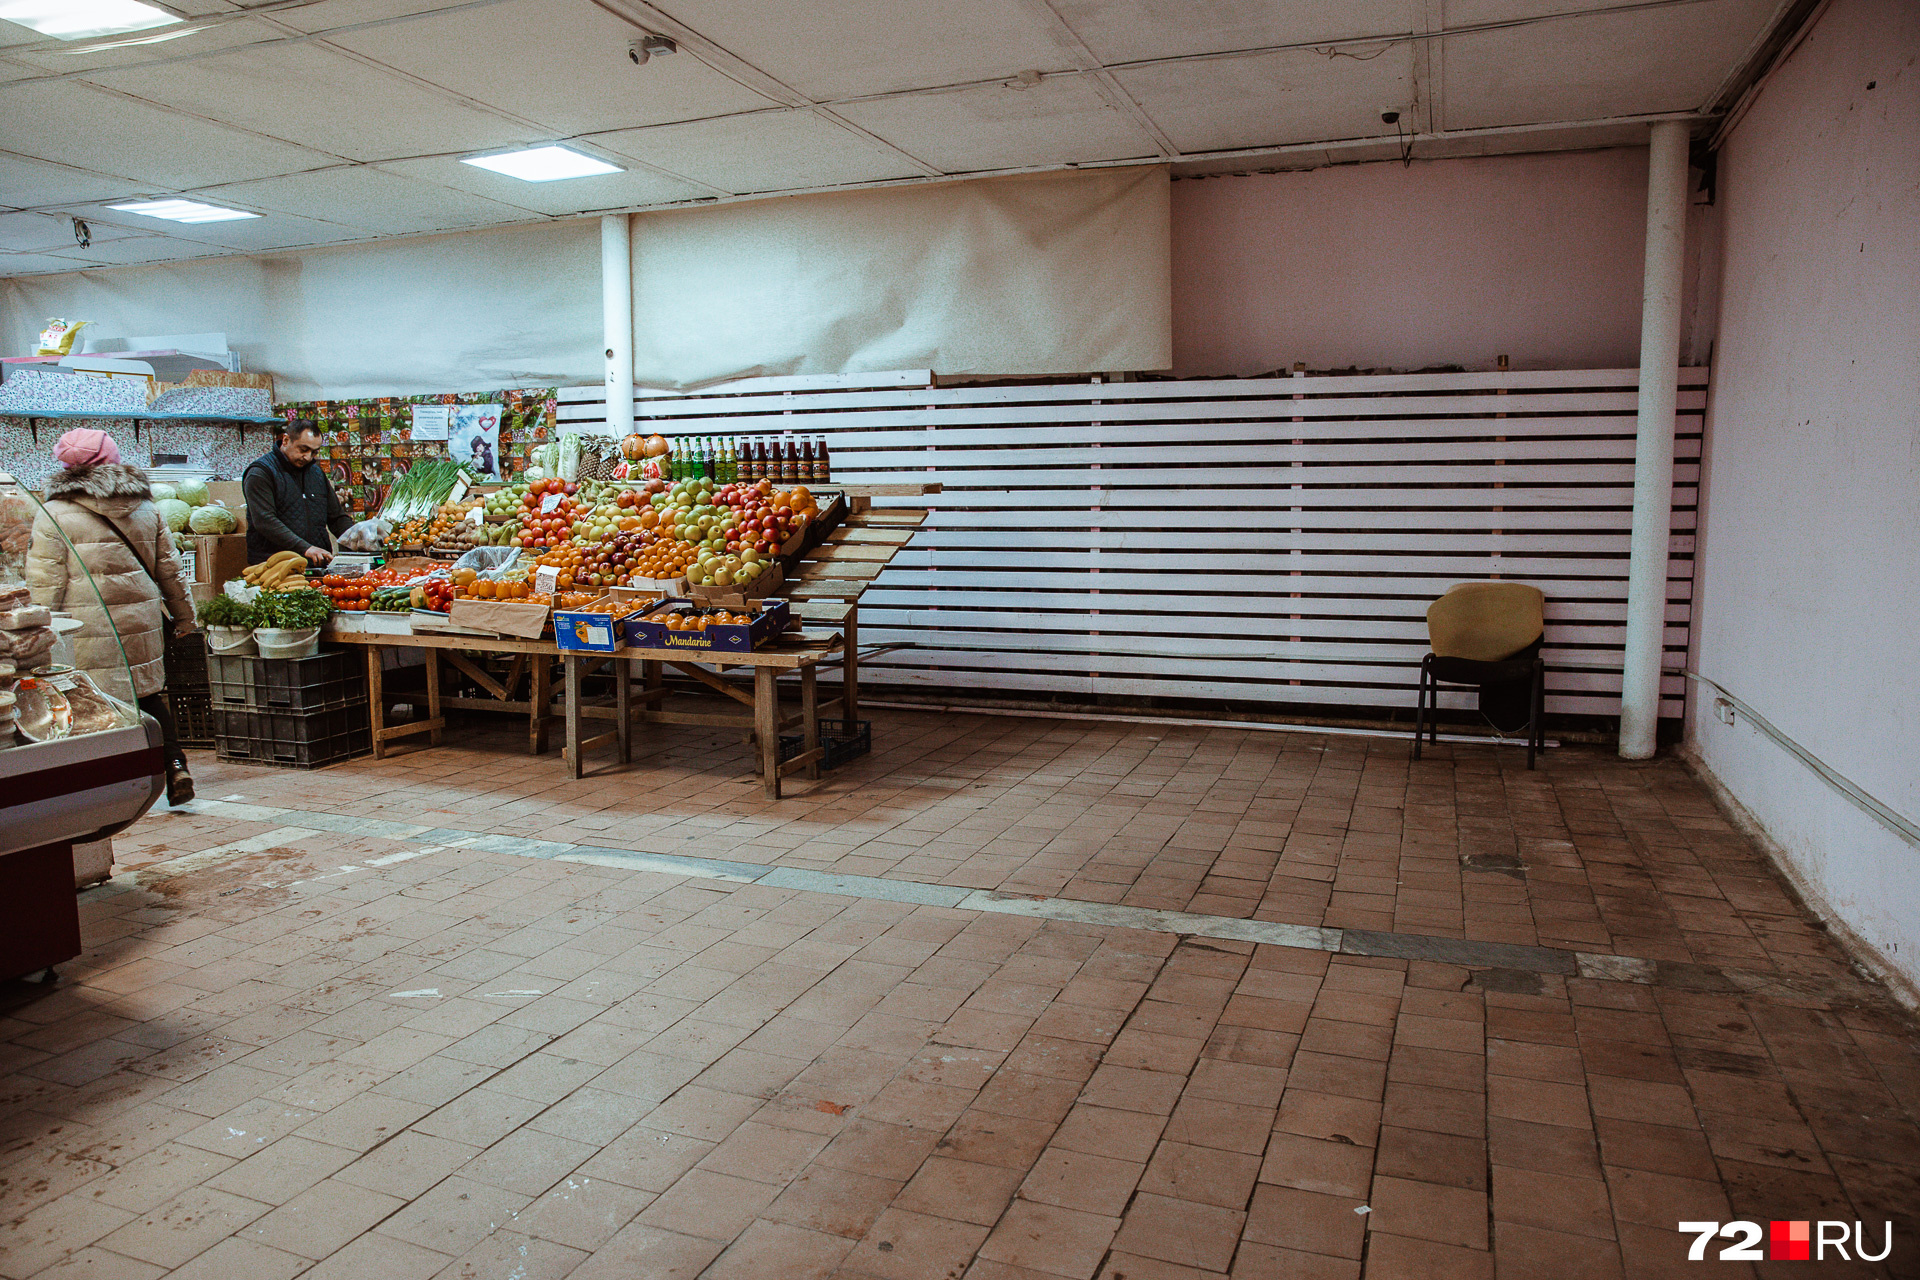 В торговом зале тоже появились пустые квадраты, которые еще недавно занимали витрины и холодильники, забитые товаром